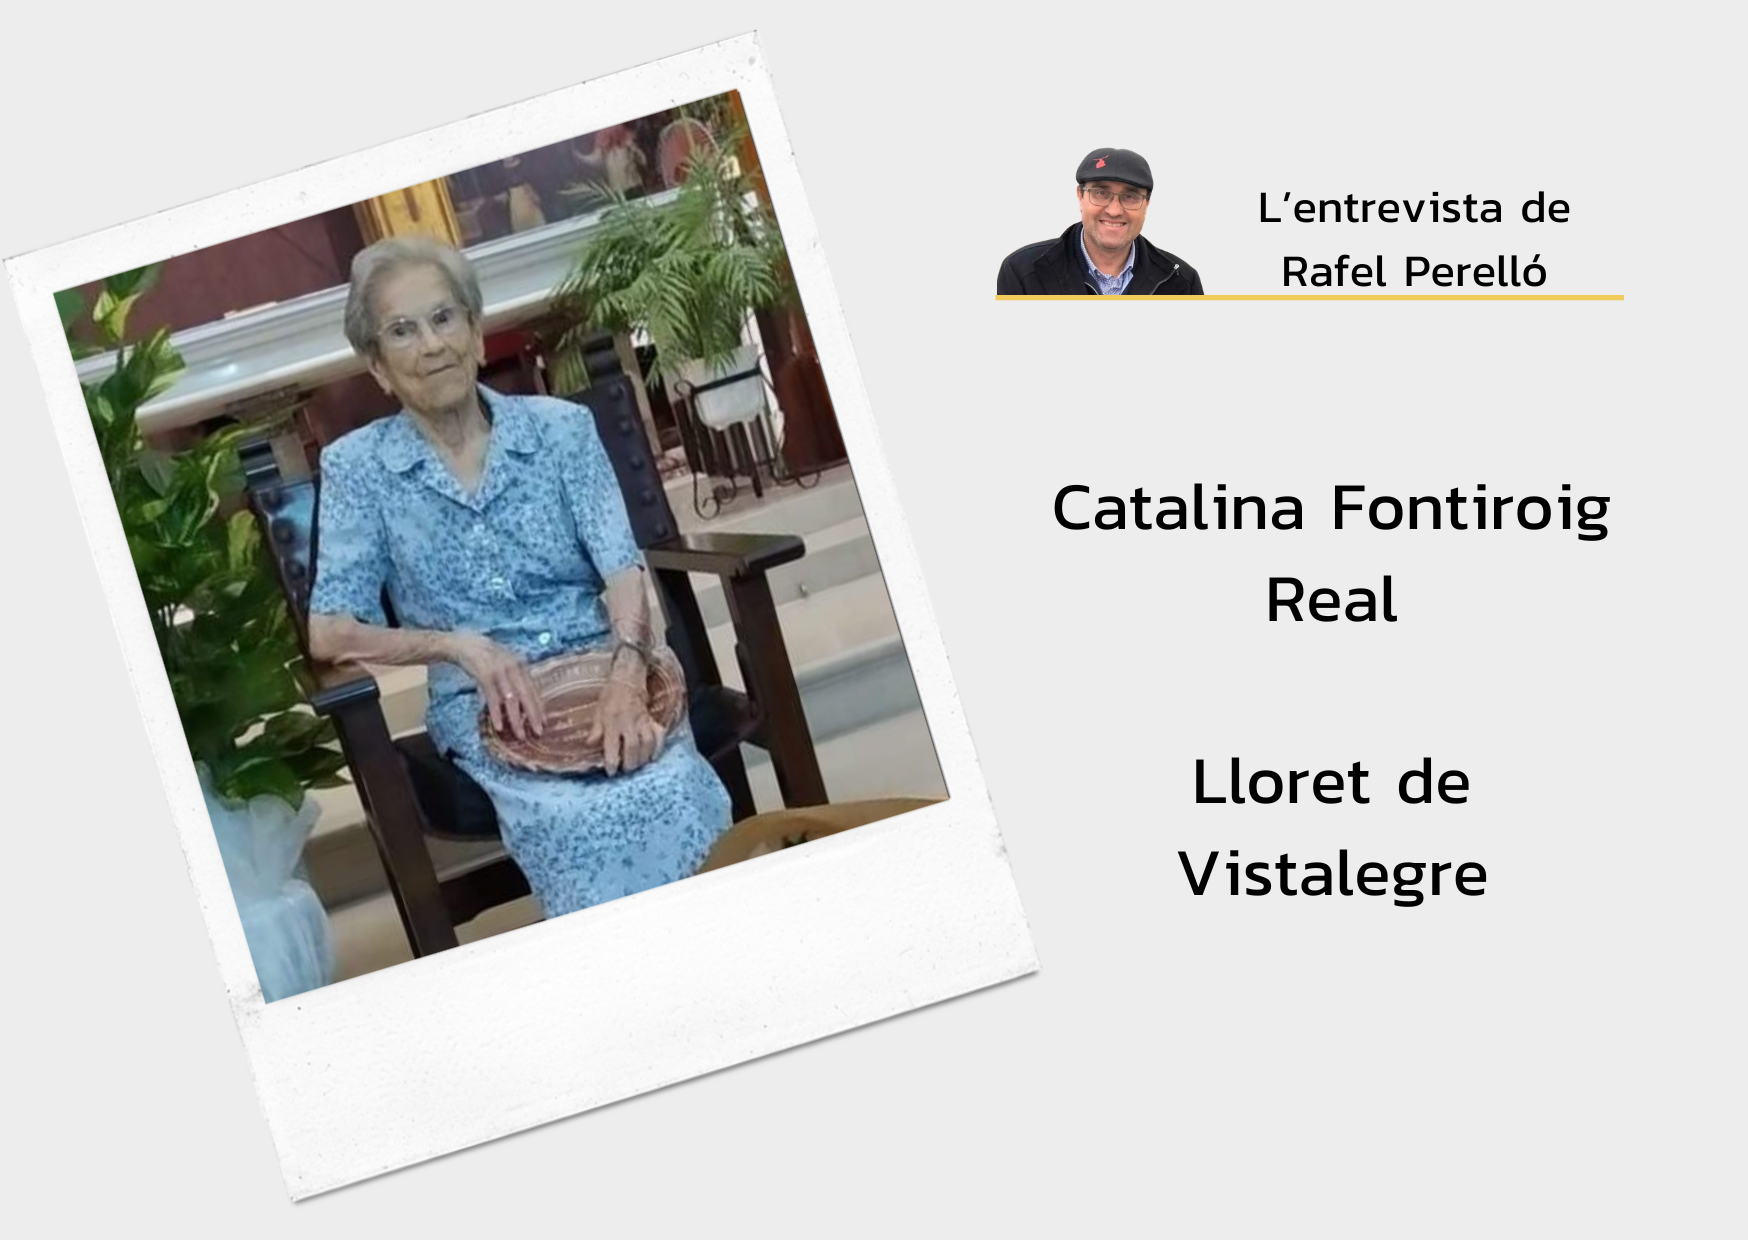 Catalina Fontiroig Real: “A Lloret, quan tenien un mort a la casa, tapaven la cisterna, jo ho som vist”